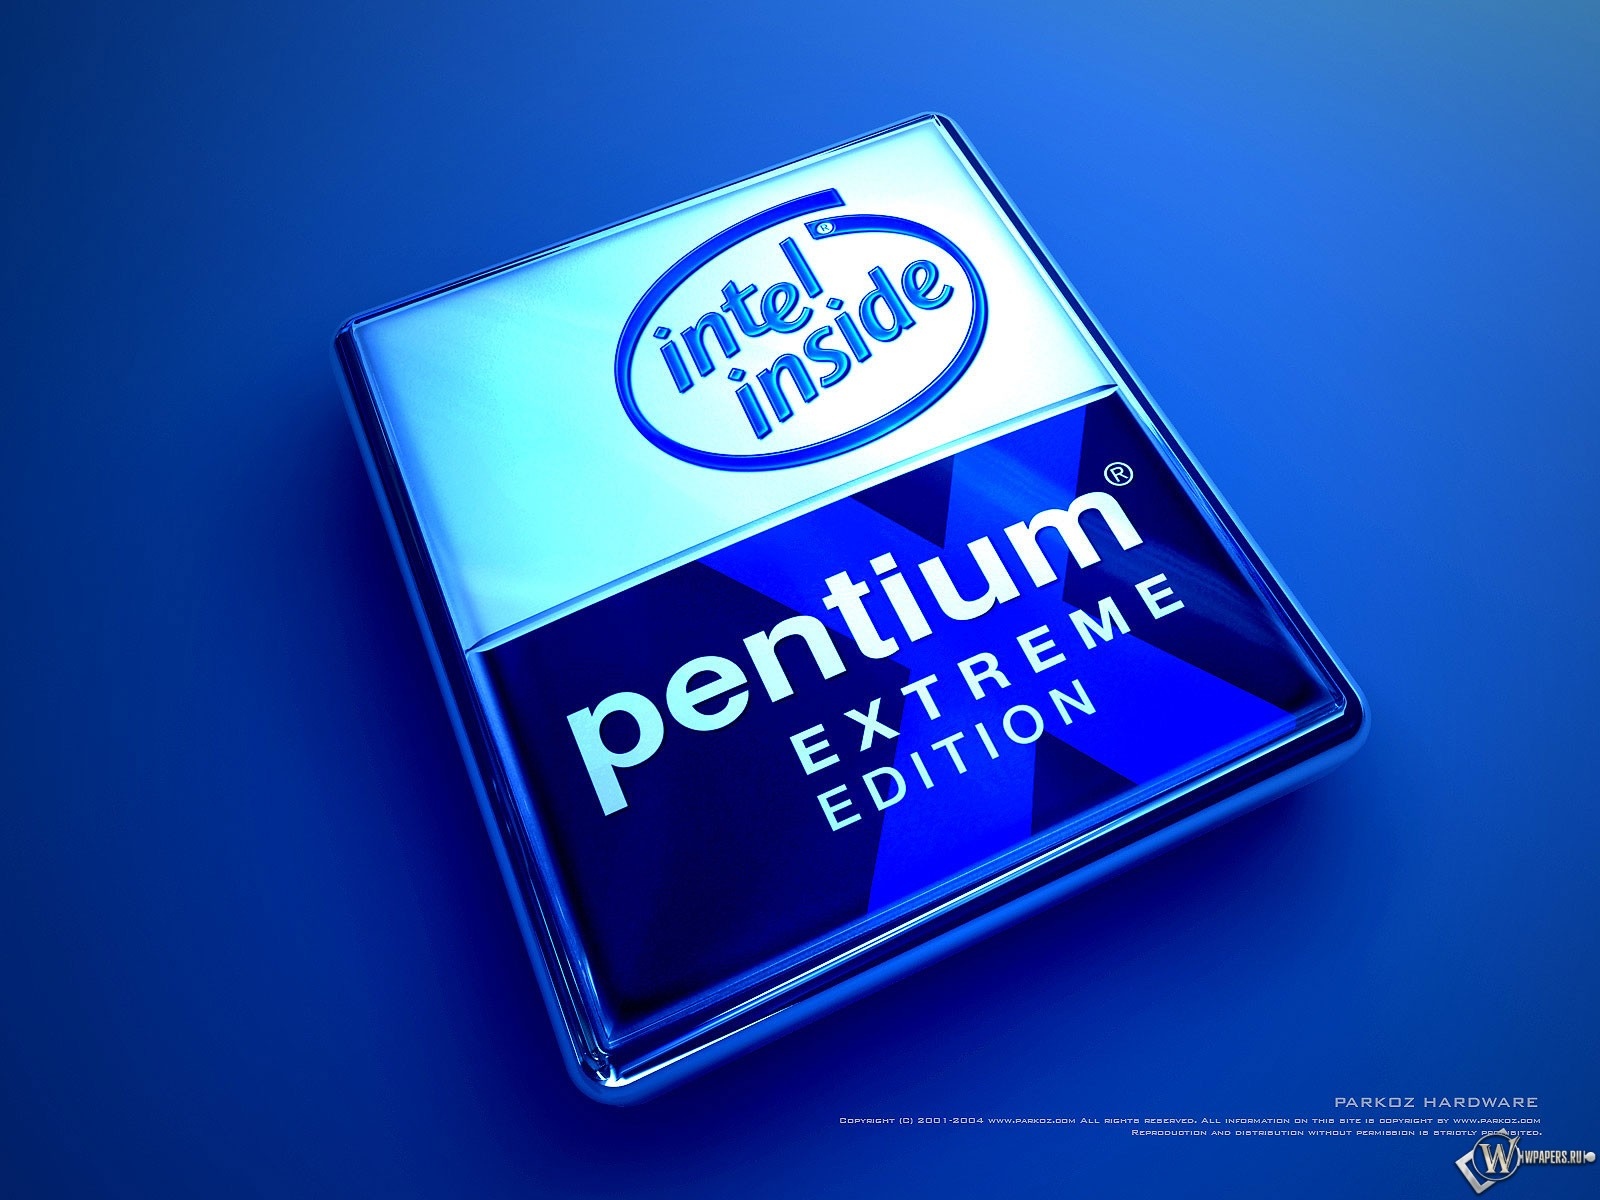 Pentium 1600x1200